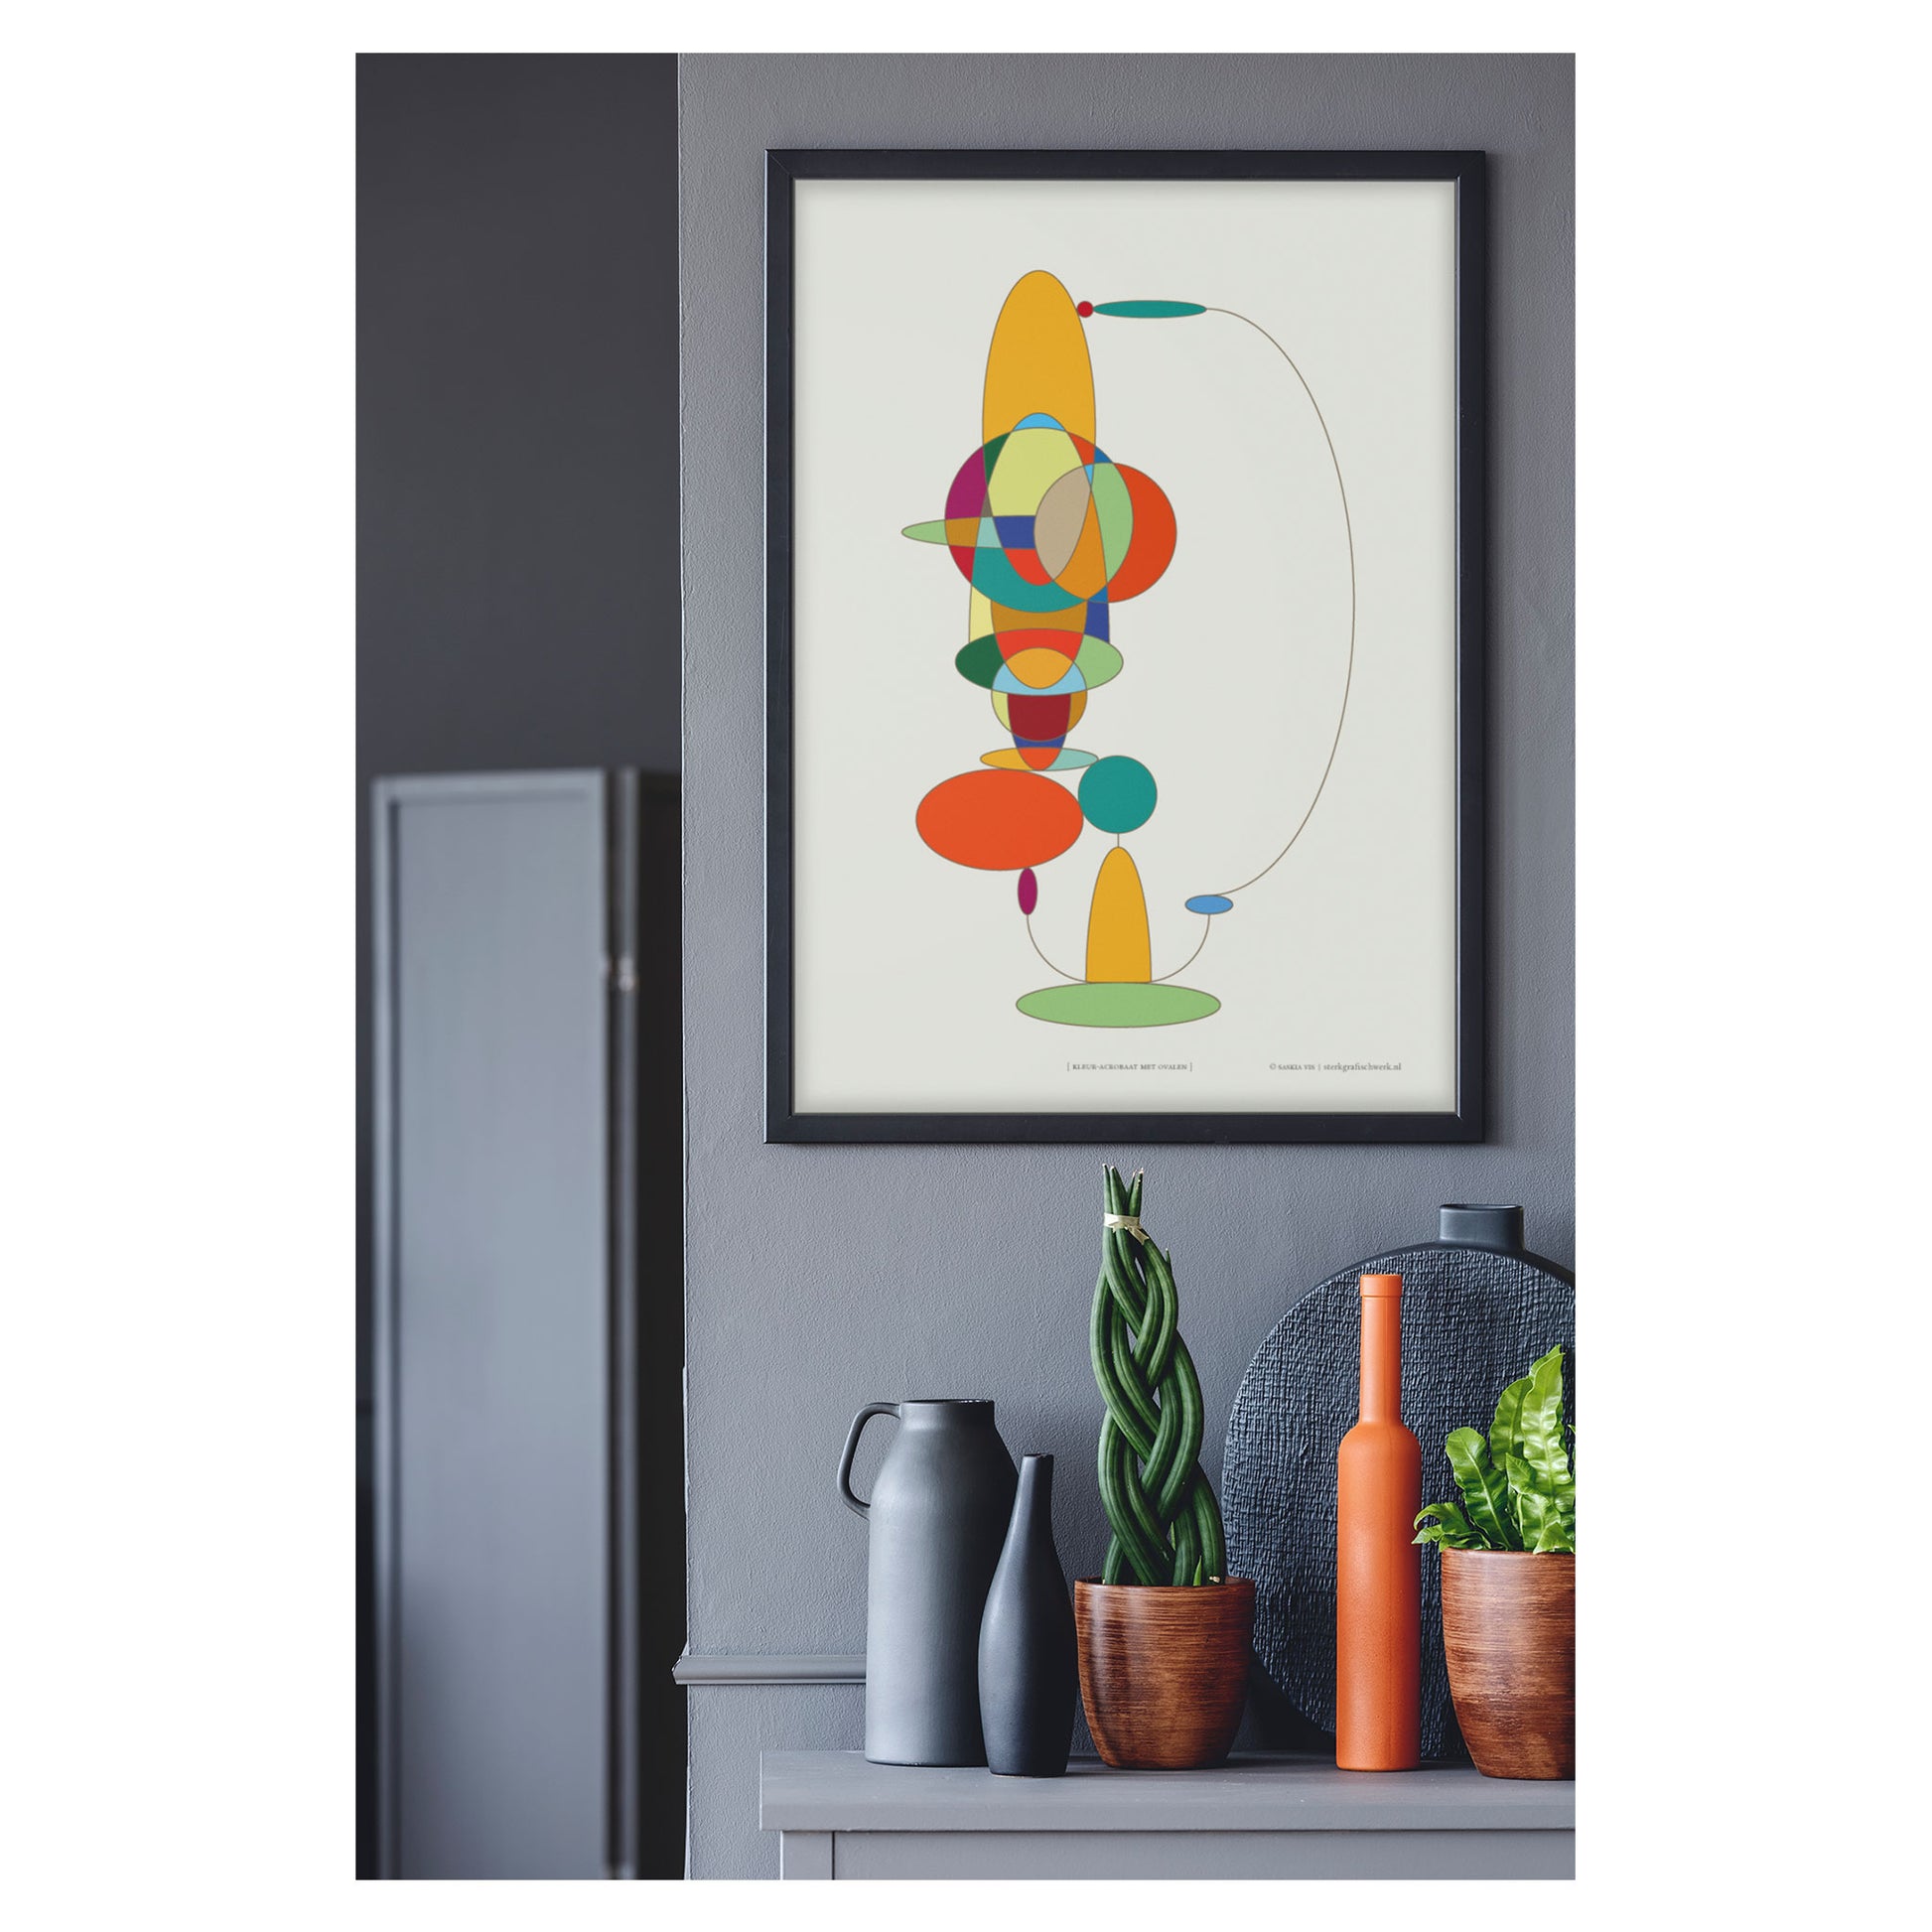 Productafbeelding, poster "kleur-acrobaat met ovalen", foto impressie 2, hangend in een interieur